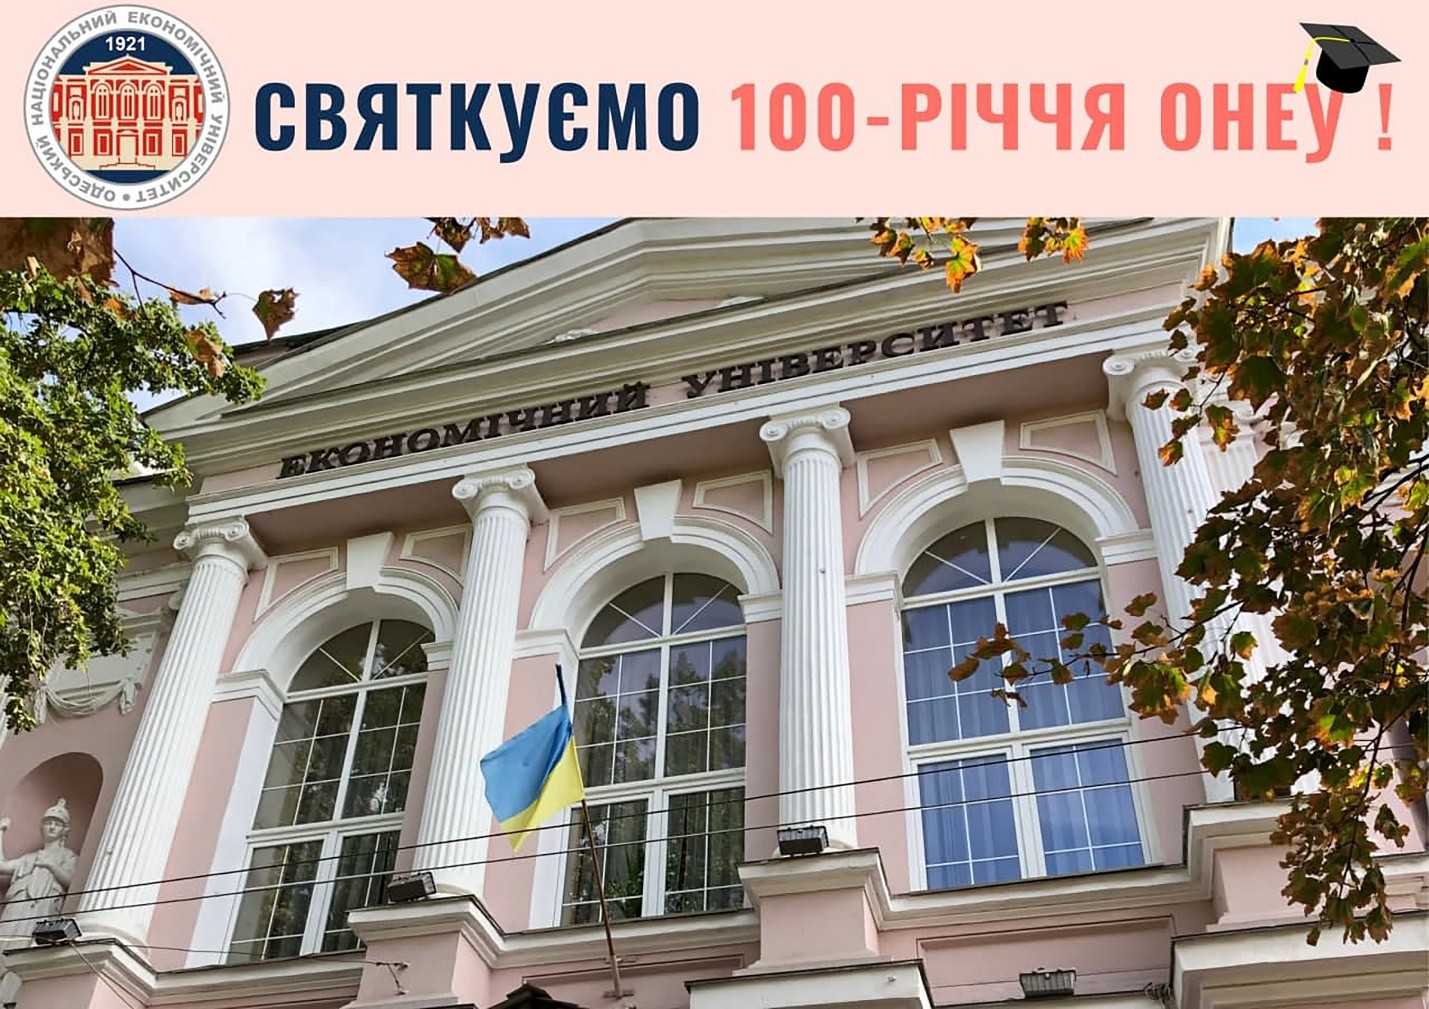 Trường Đại học Tổng hợp Kinh tế Quốc gia Odessa mời dự Lễ Kỷ niệm 100 năm ngày thành lập trường